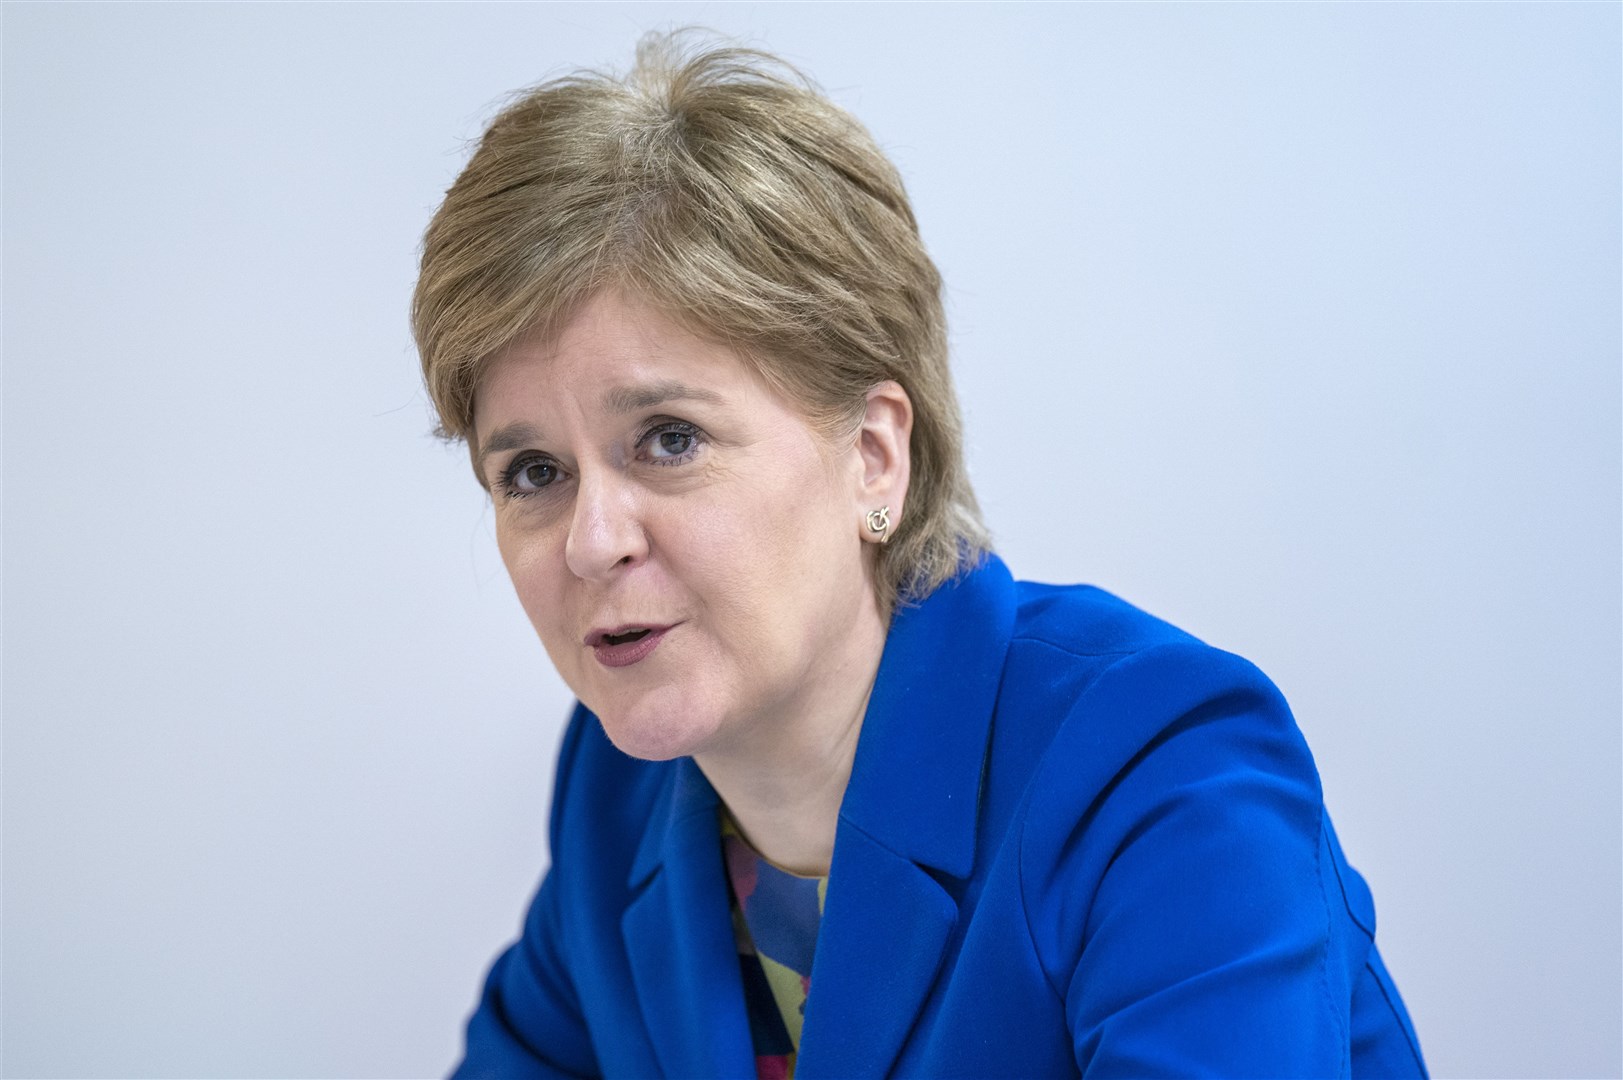 Nicola Sturgeon said the SNP is not in crisis (Jane Barlow/PA)